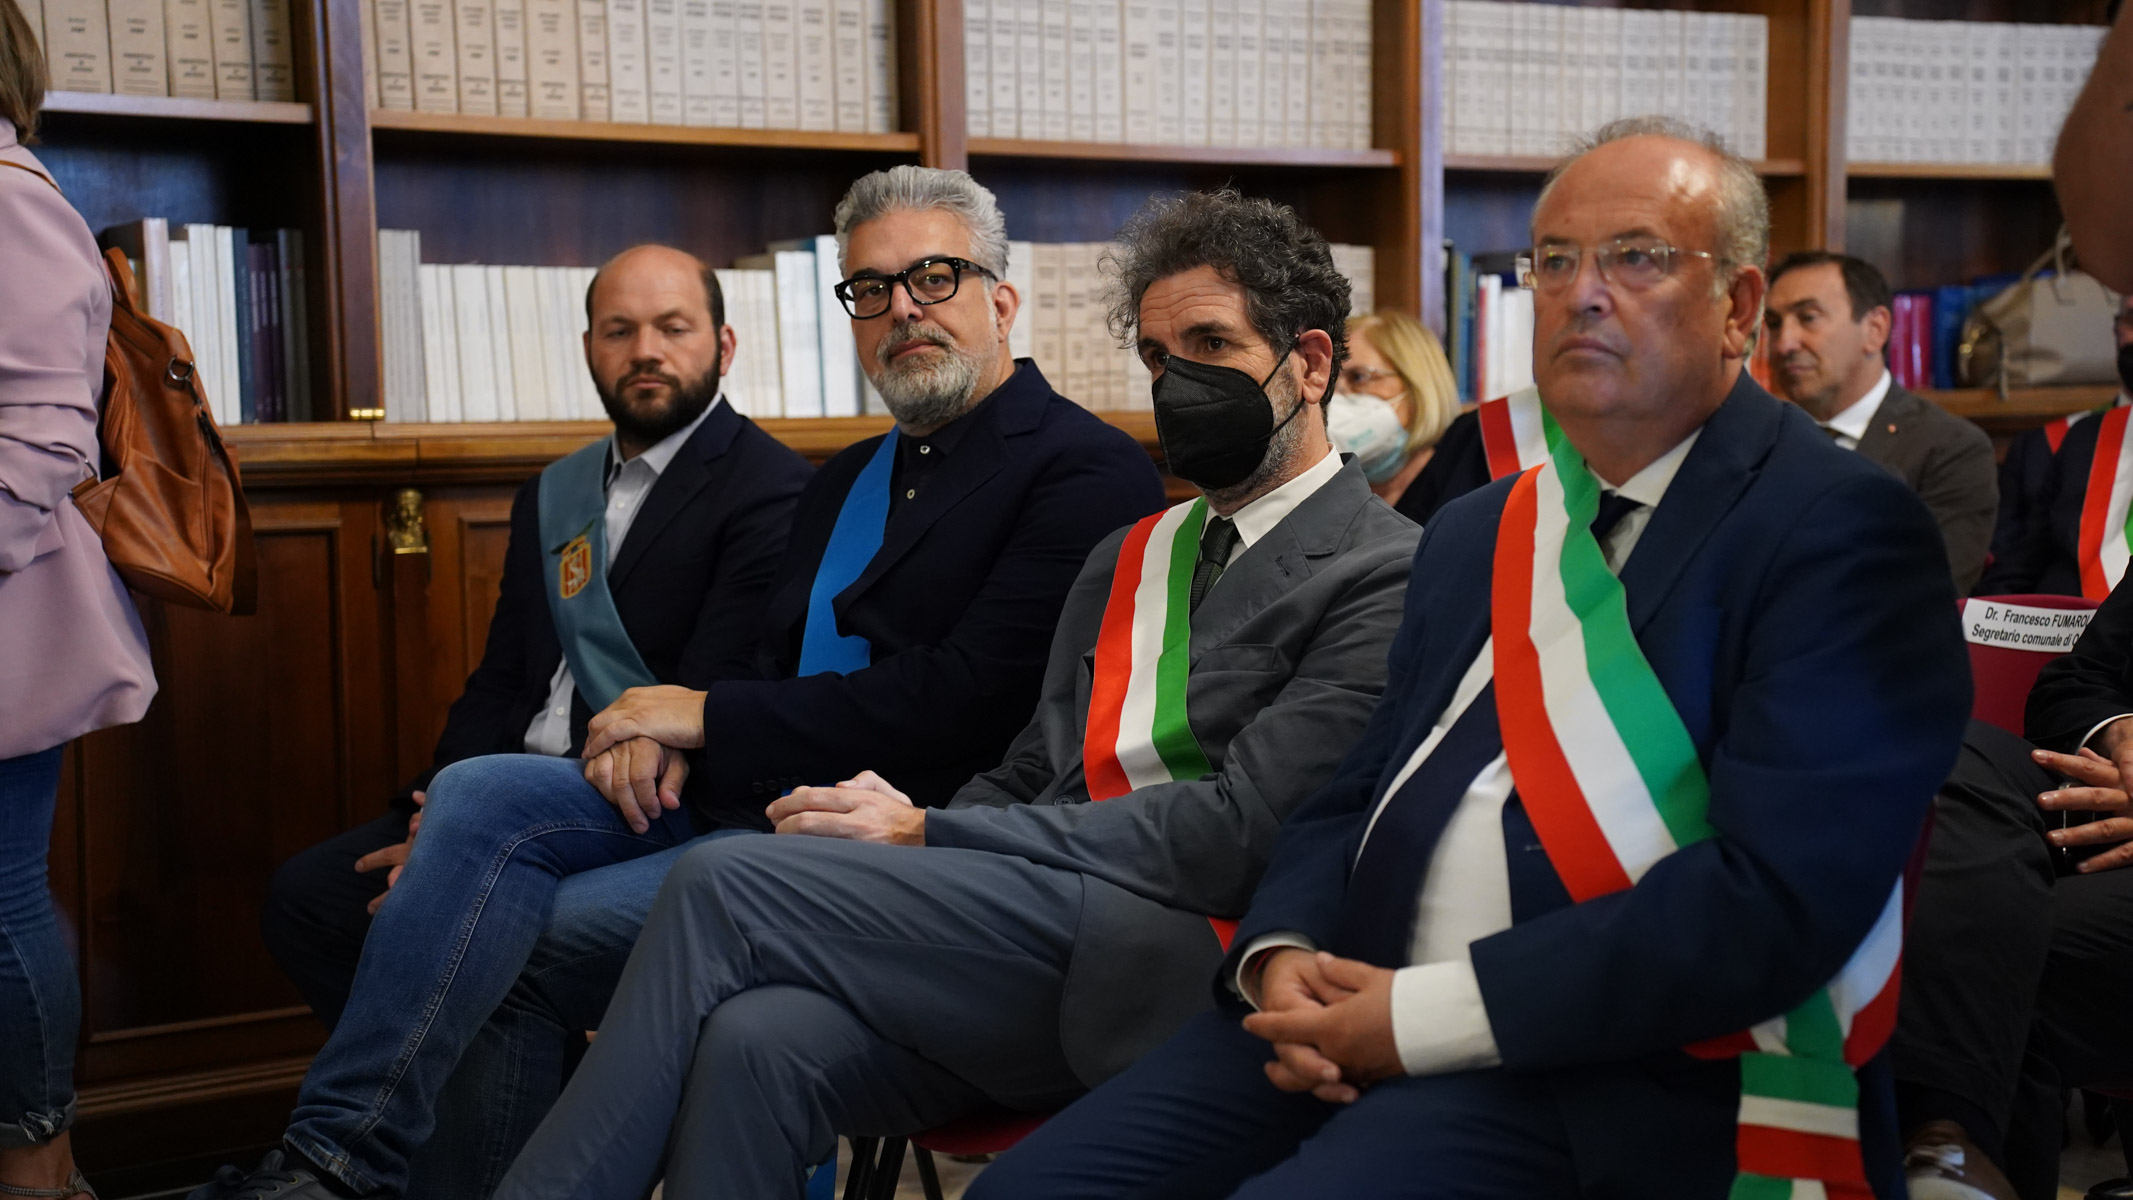 Galleria Emiliano alla firma del CIS Brindisi-Lecce insieme alla ministra Carfagna: “Somme importanti, la Puglia saprà correre” - Diapositiva 3 di 14